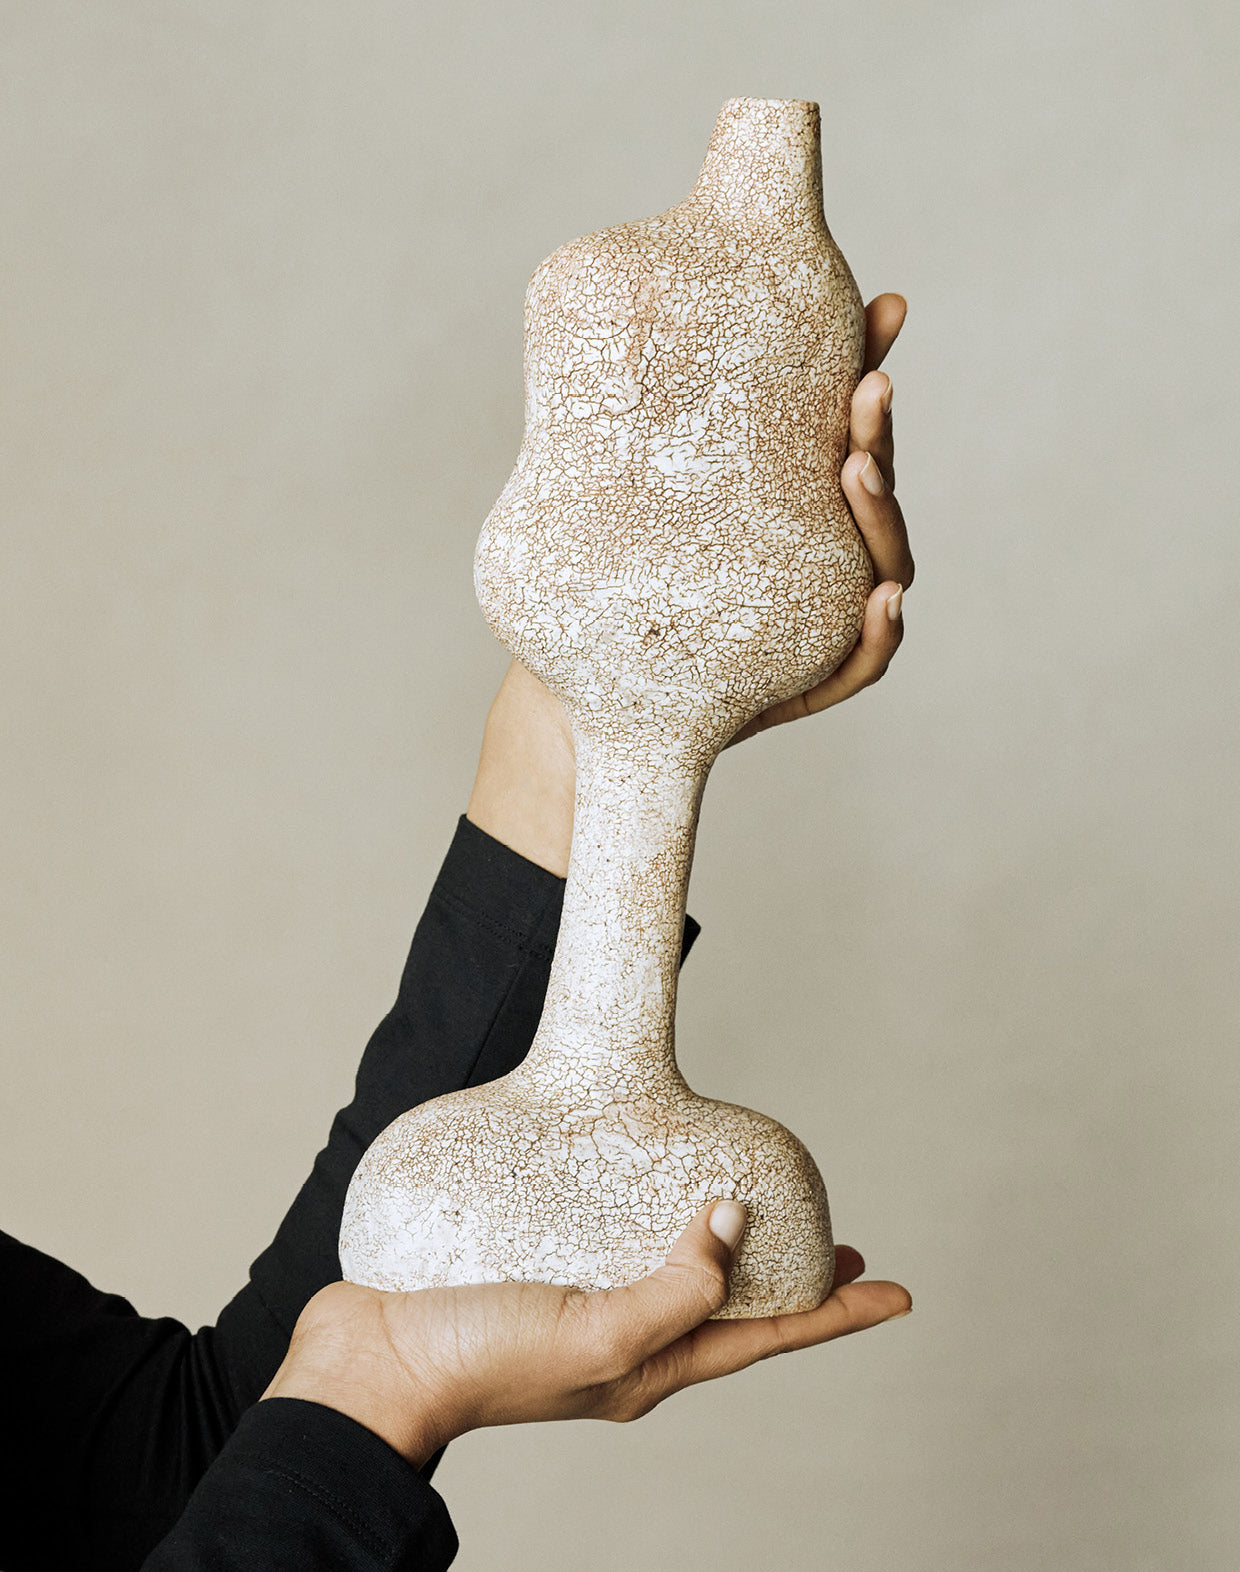 Maggie Wells, Ceramic Sculpture with Terra Sigillata Glaze No. 01